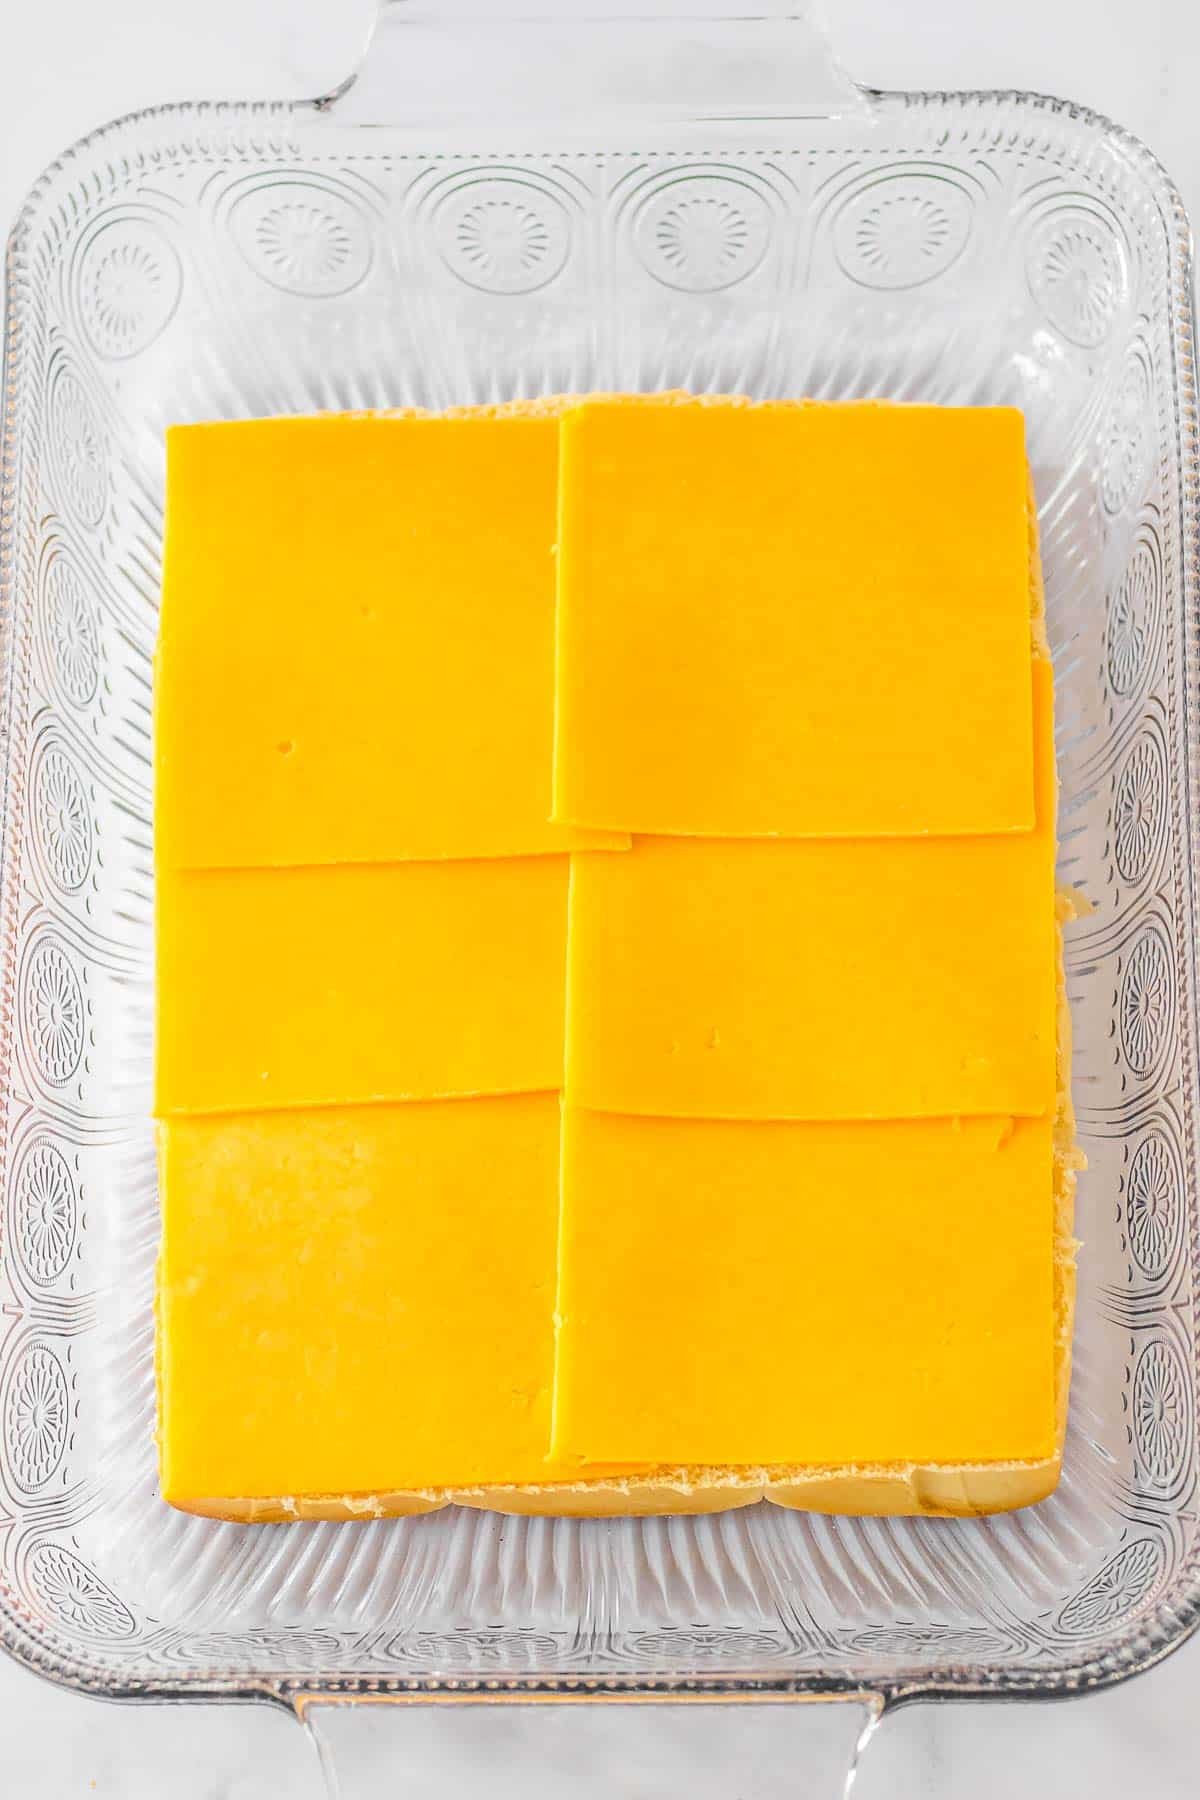 Cheese slices lining hawaiian rolls in a baking dish.